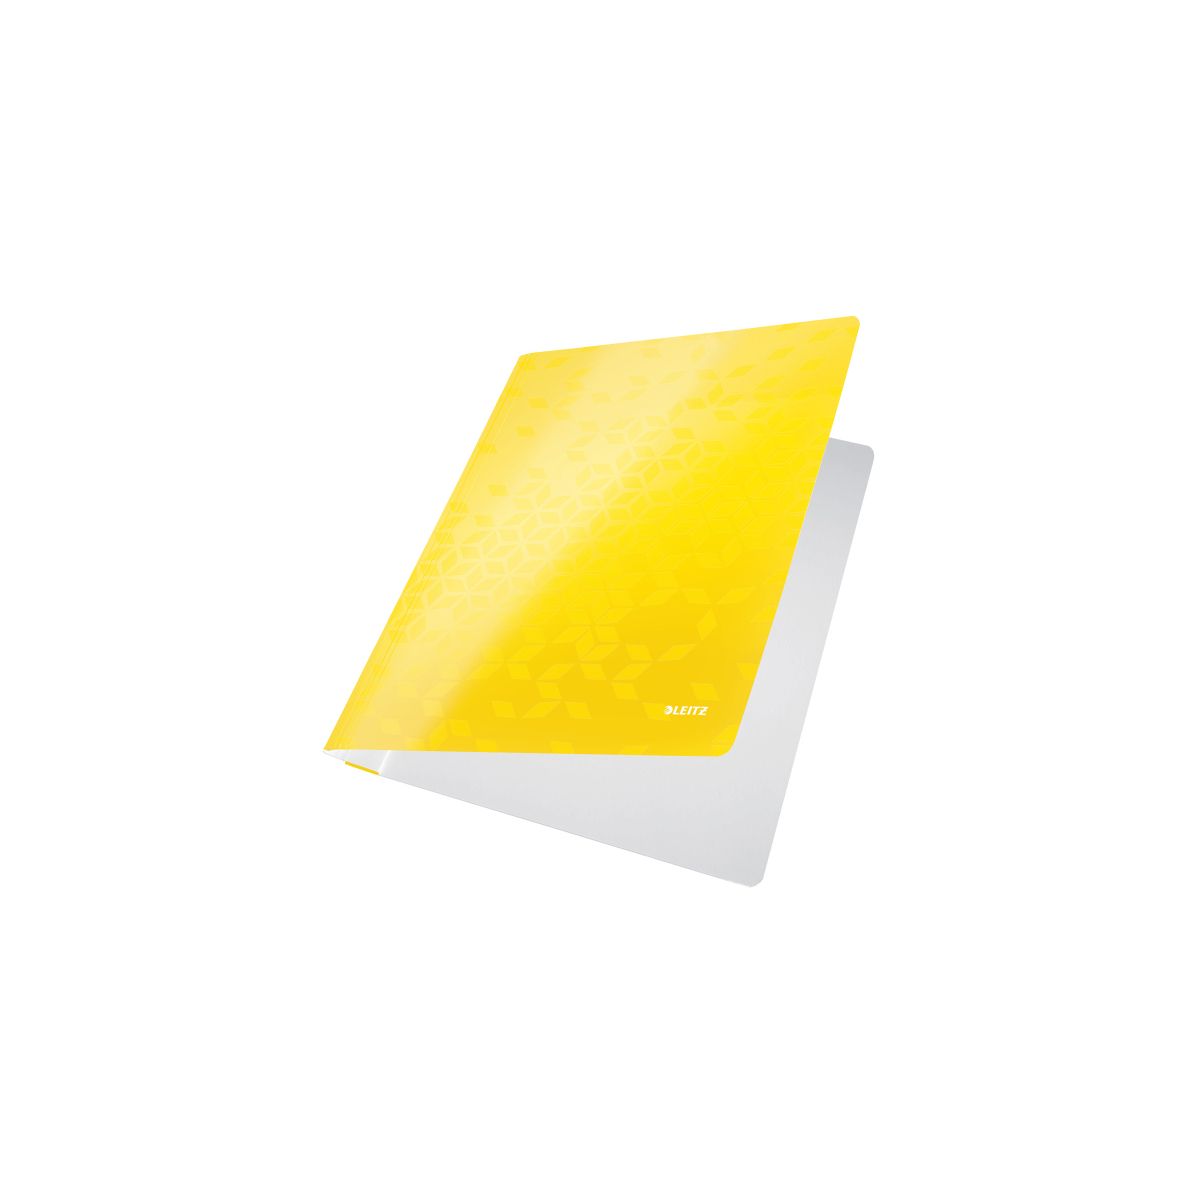 Skoroszyt WOW A4 żółty karton Leitz (30010016)